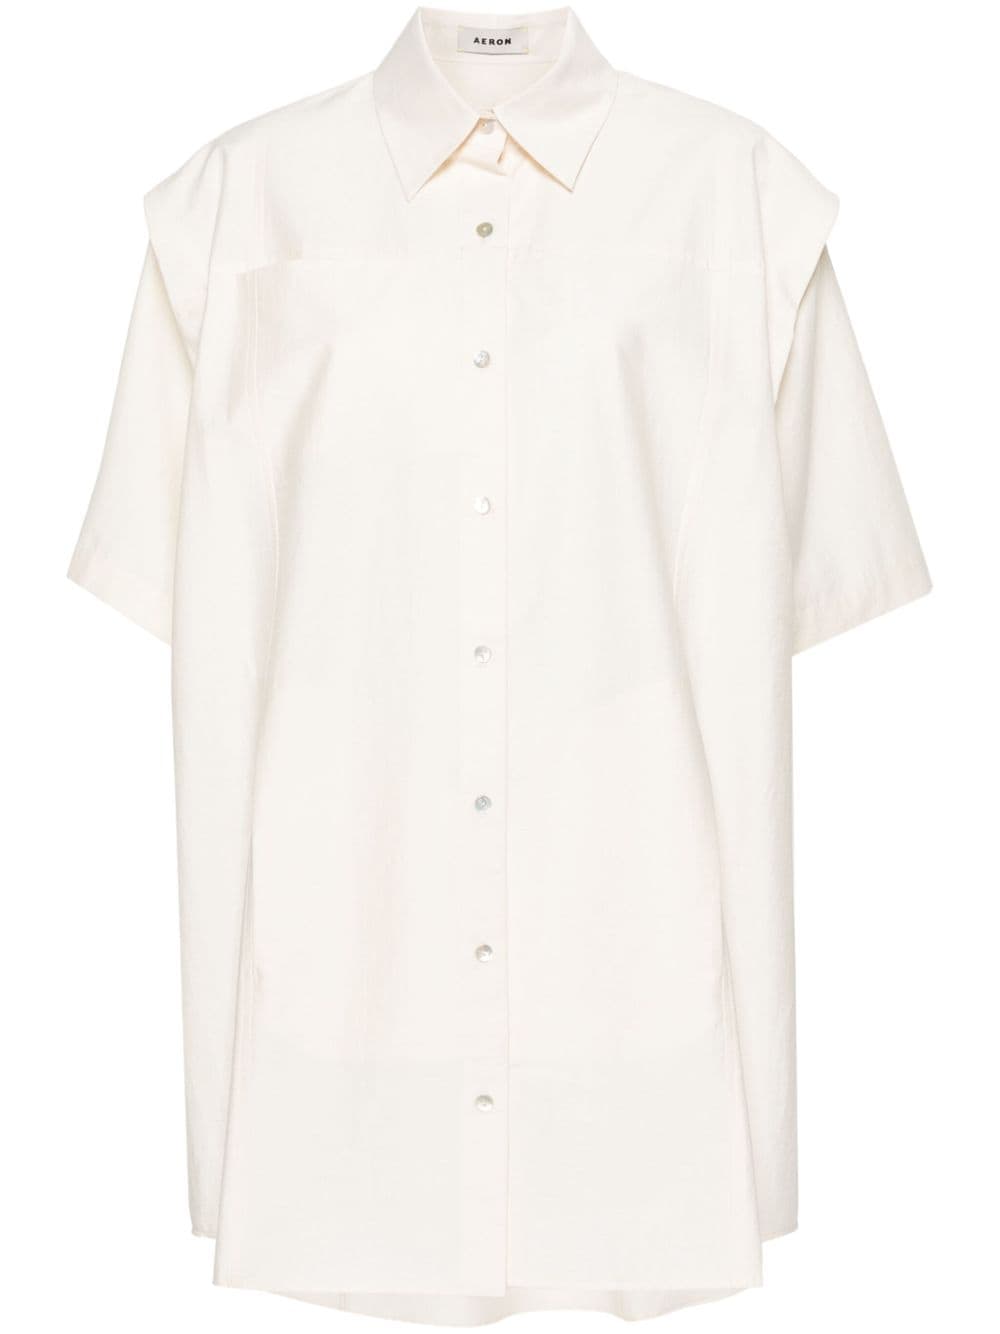 AERON Tamar poplin shirt dress - Neutrals von AERON